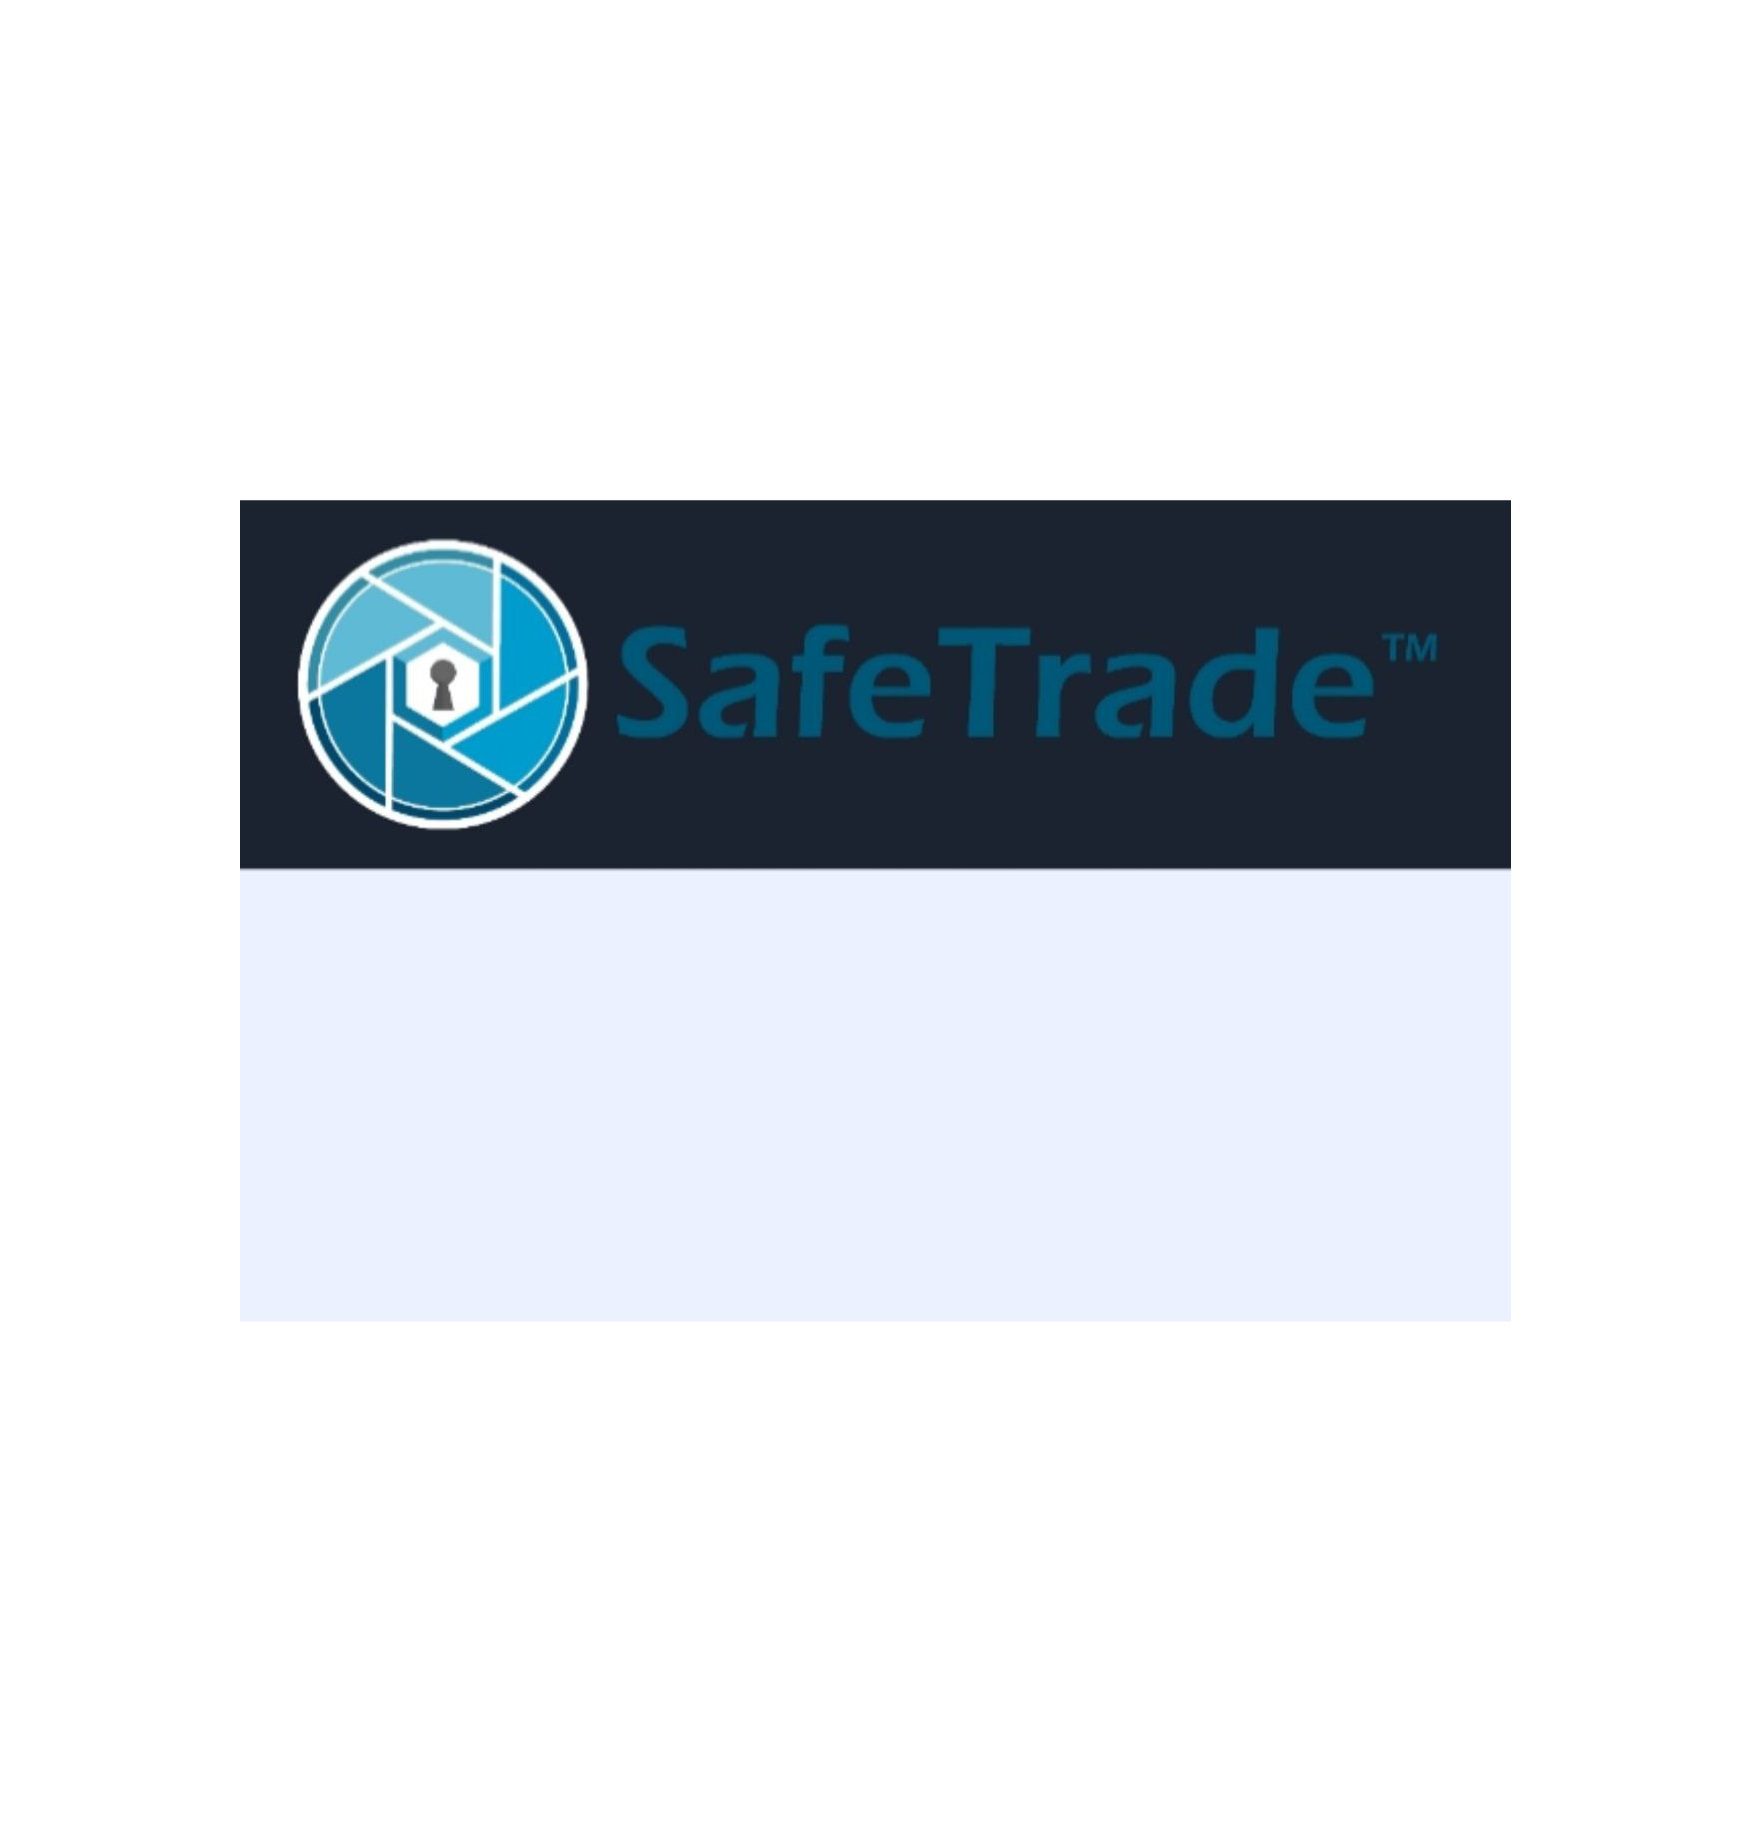 Safe Trade